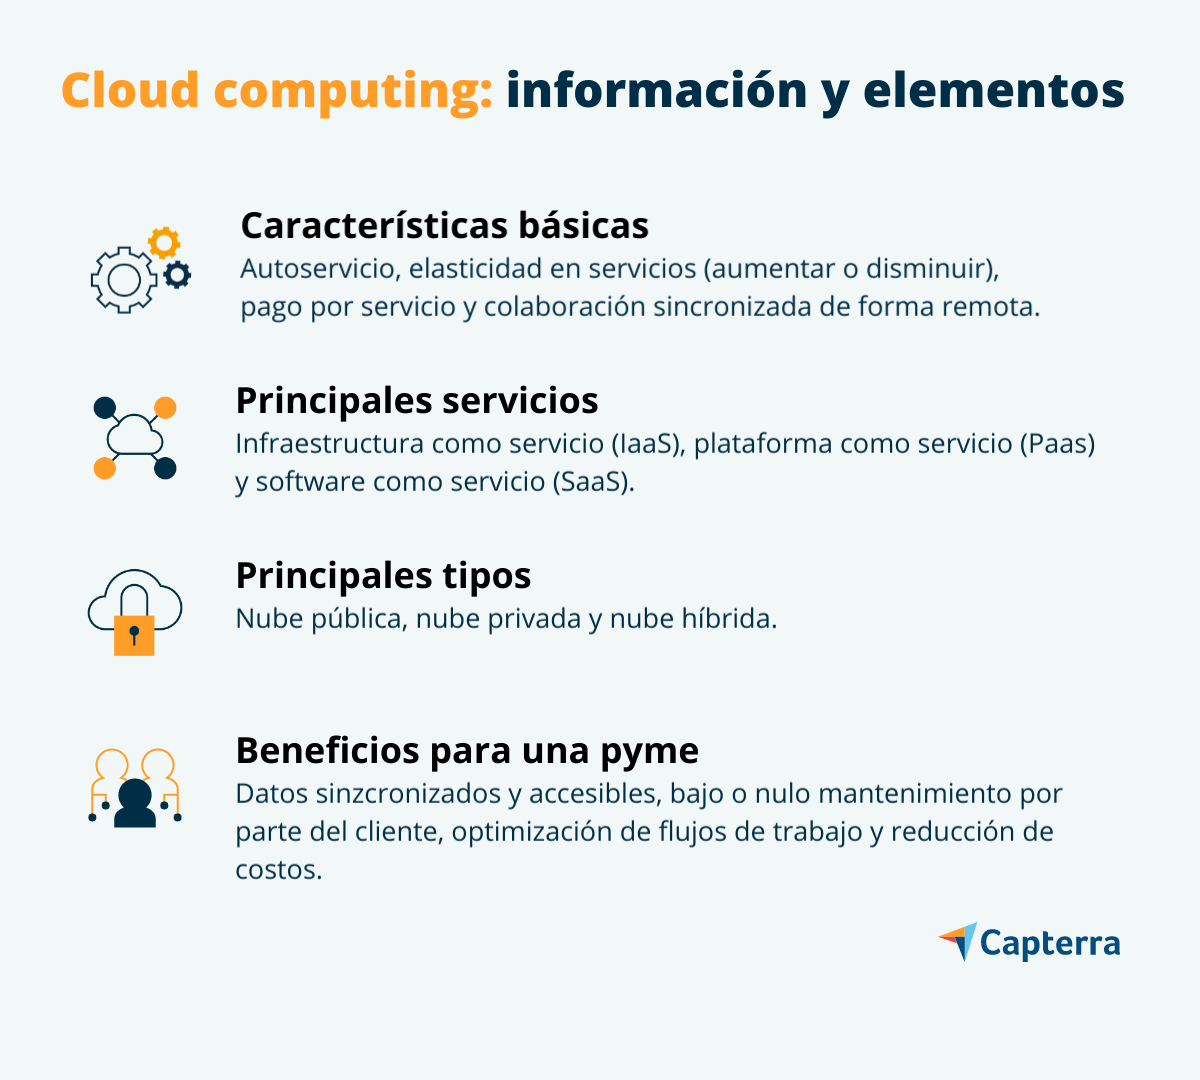 Ejemplos de características, servicios, tipos y beneficios de cloud computing